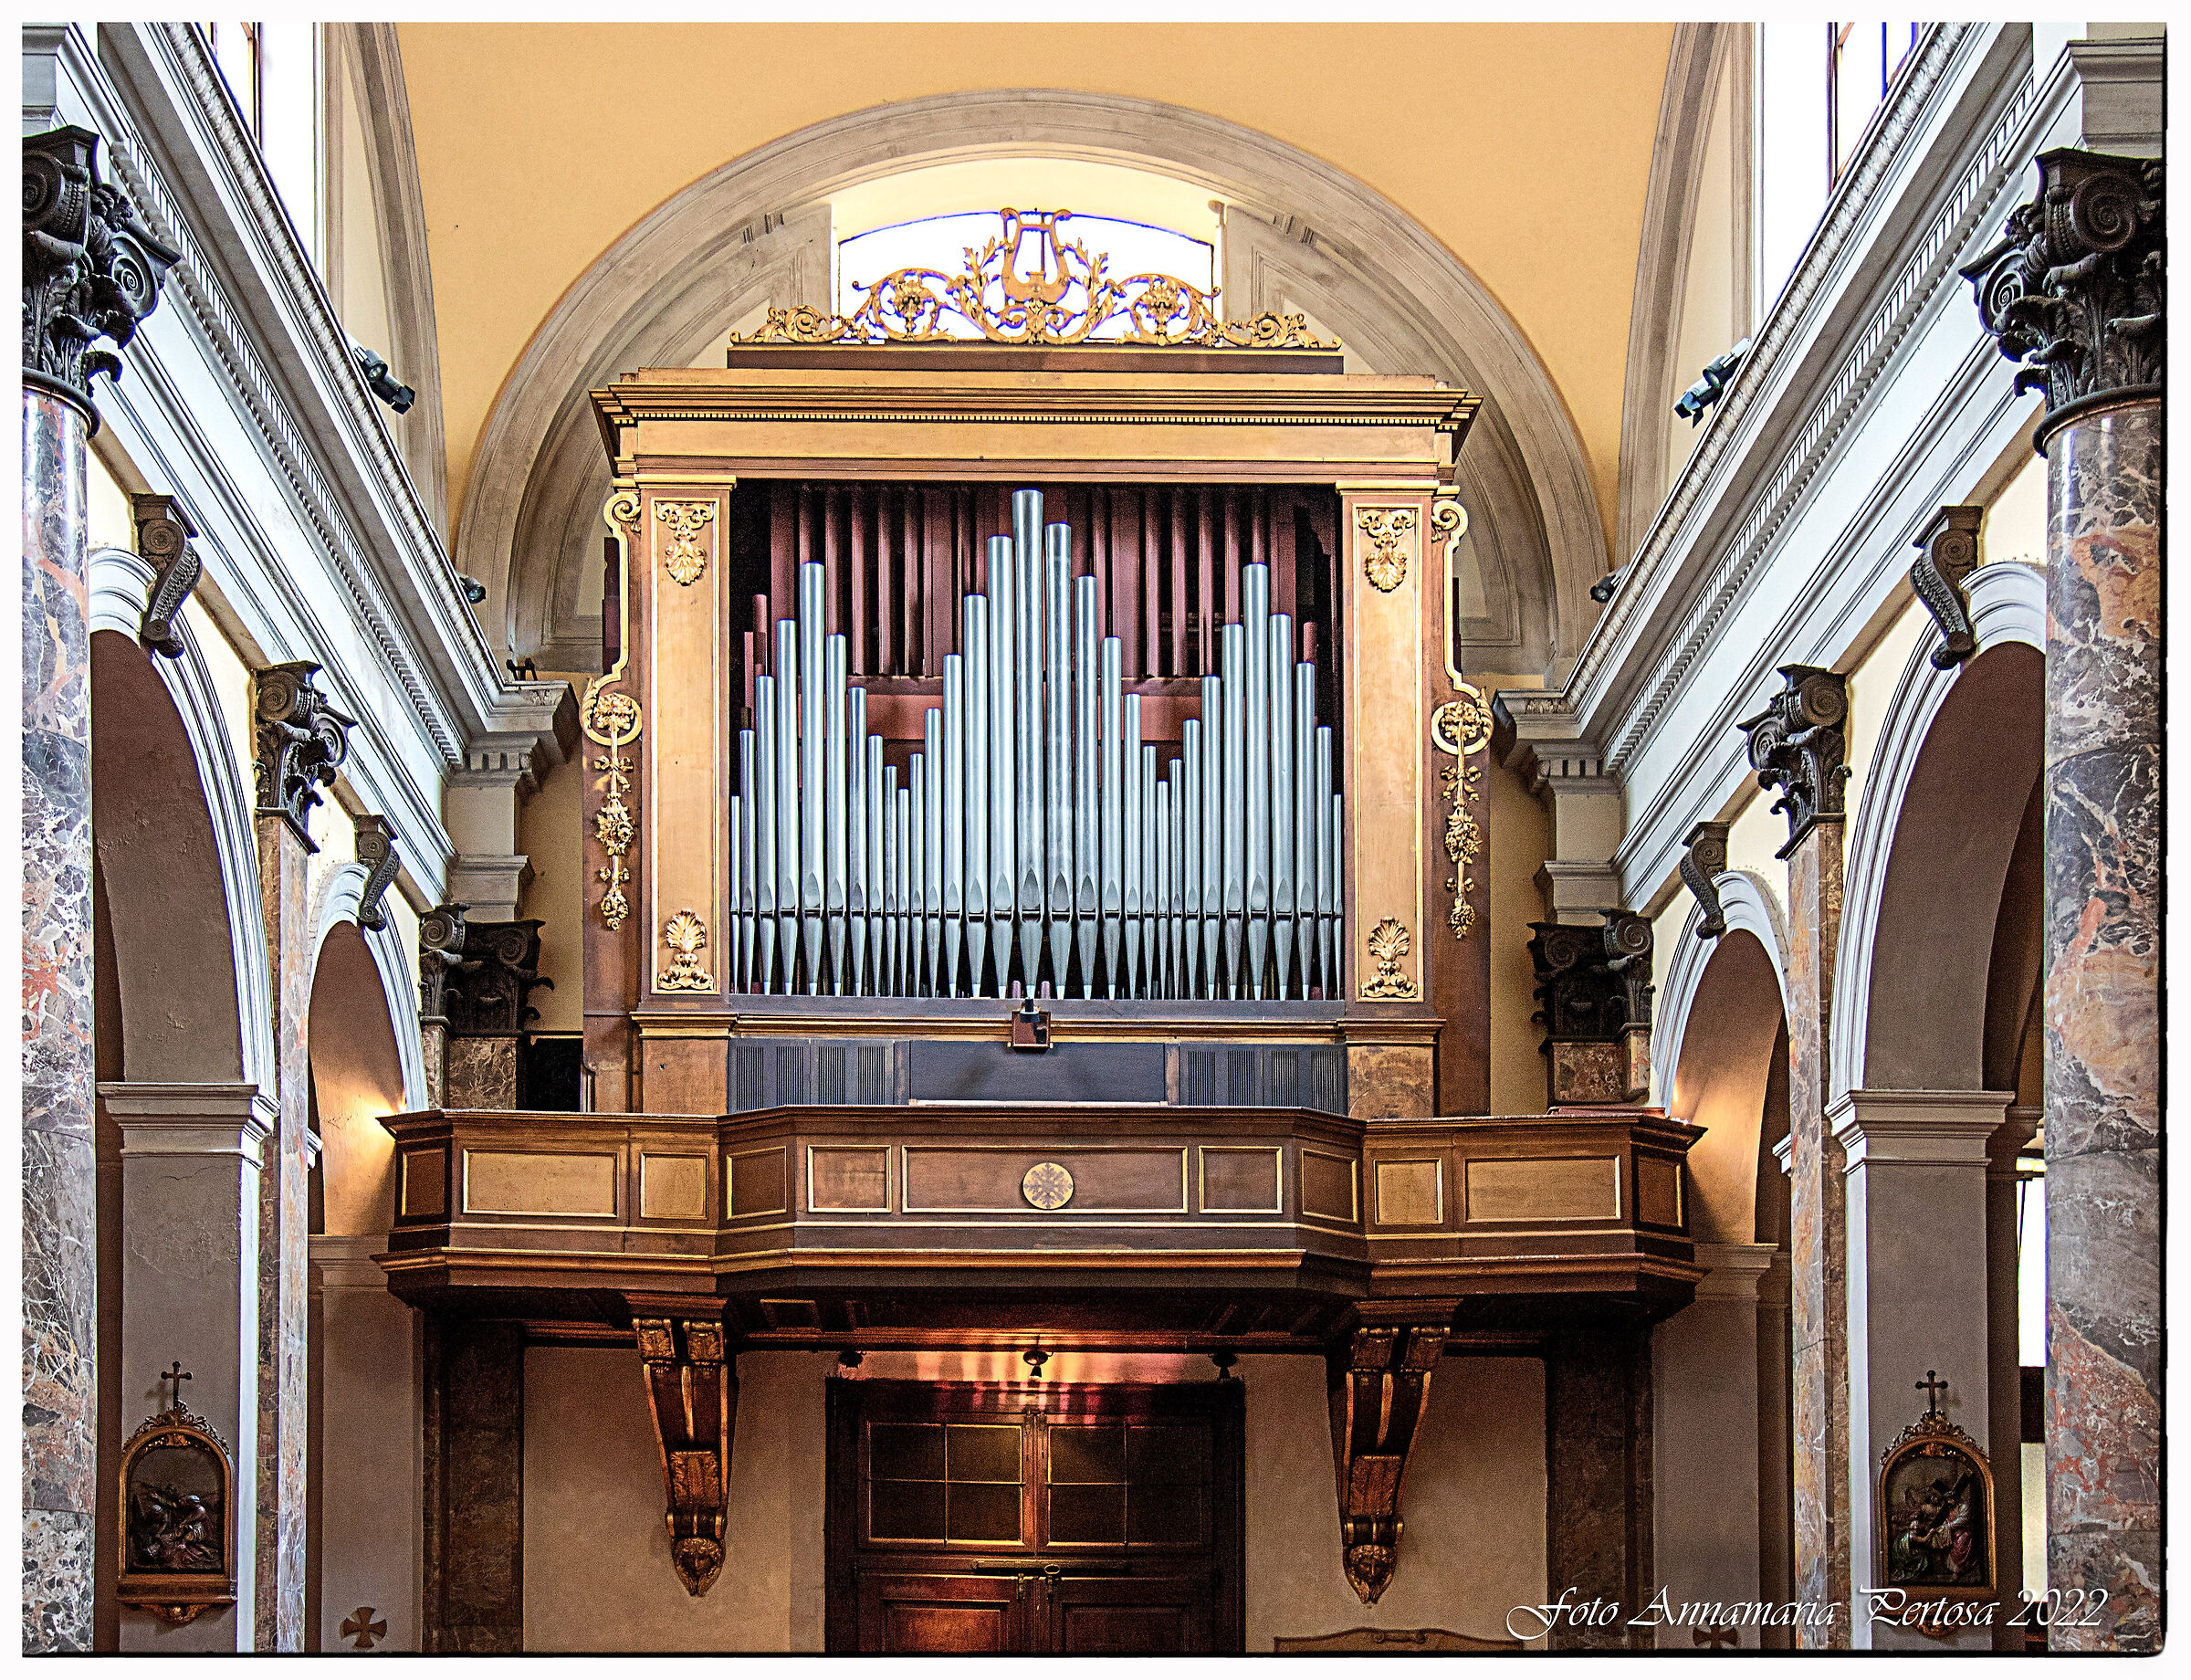 The organ of San Giorgio at Palazzo Milano...